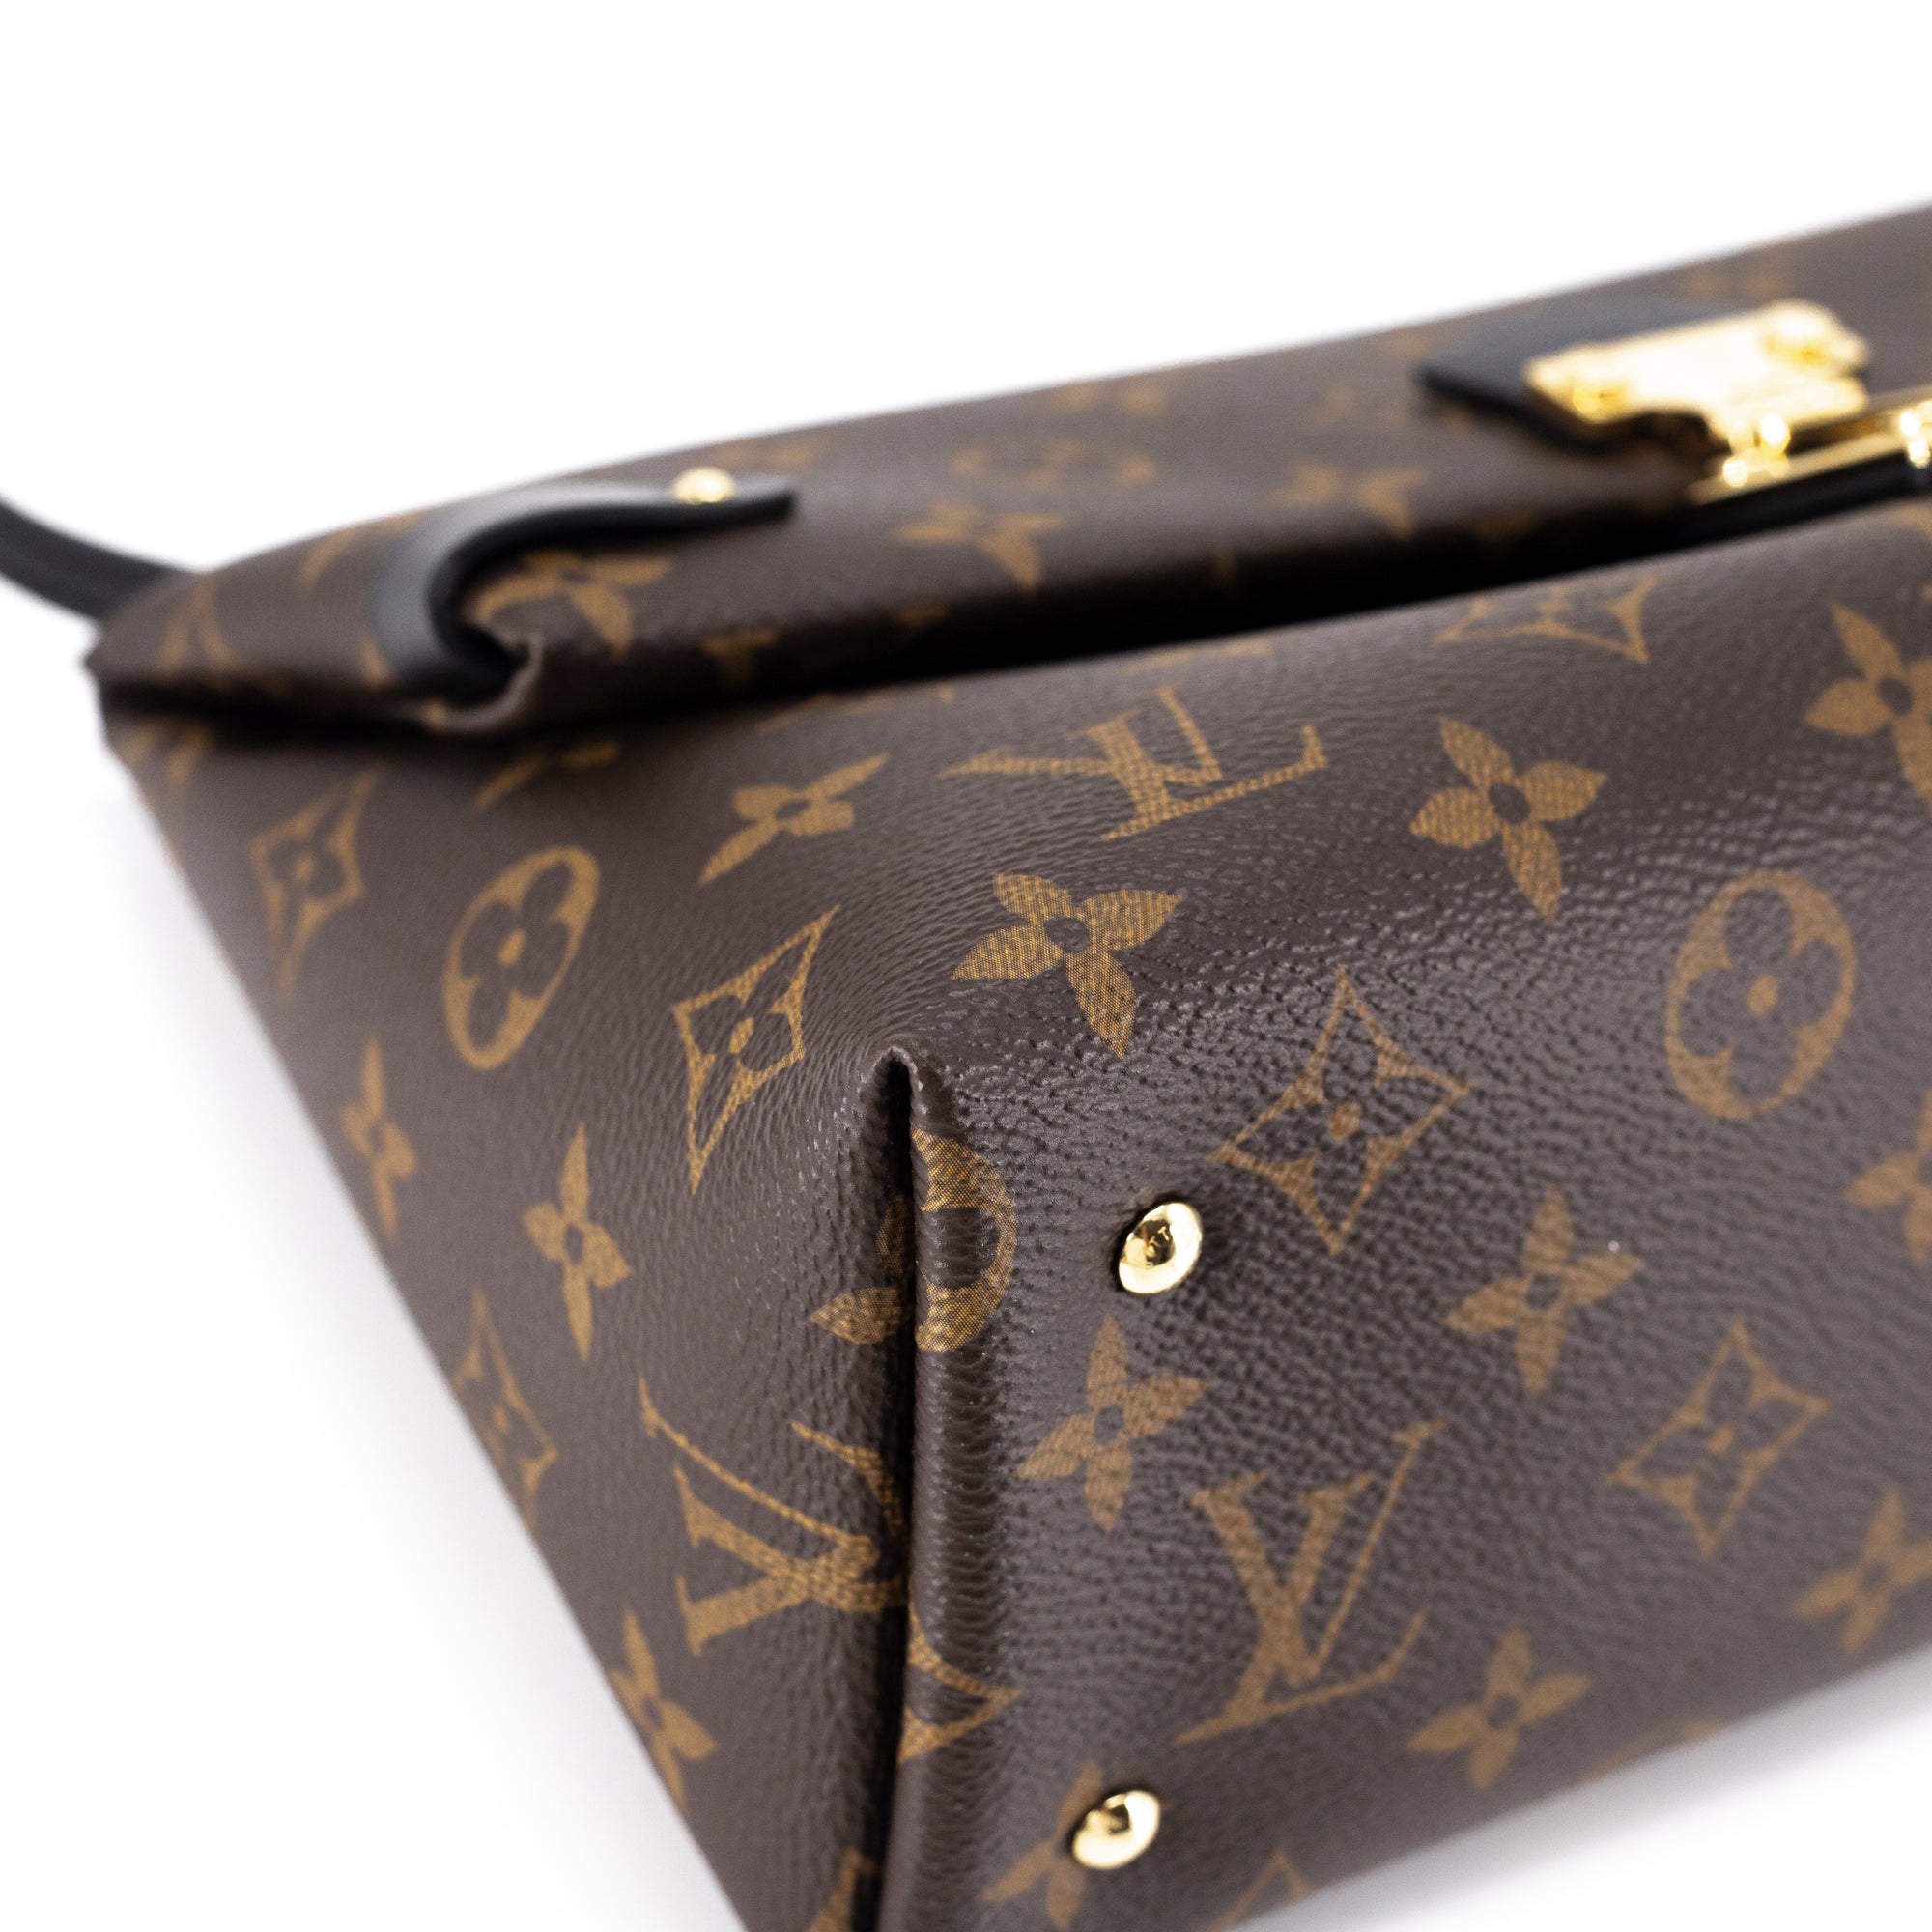 Louis Vuitton Triangle Handbag 319142